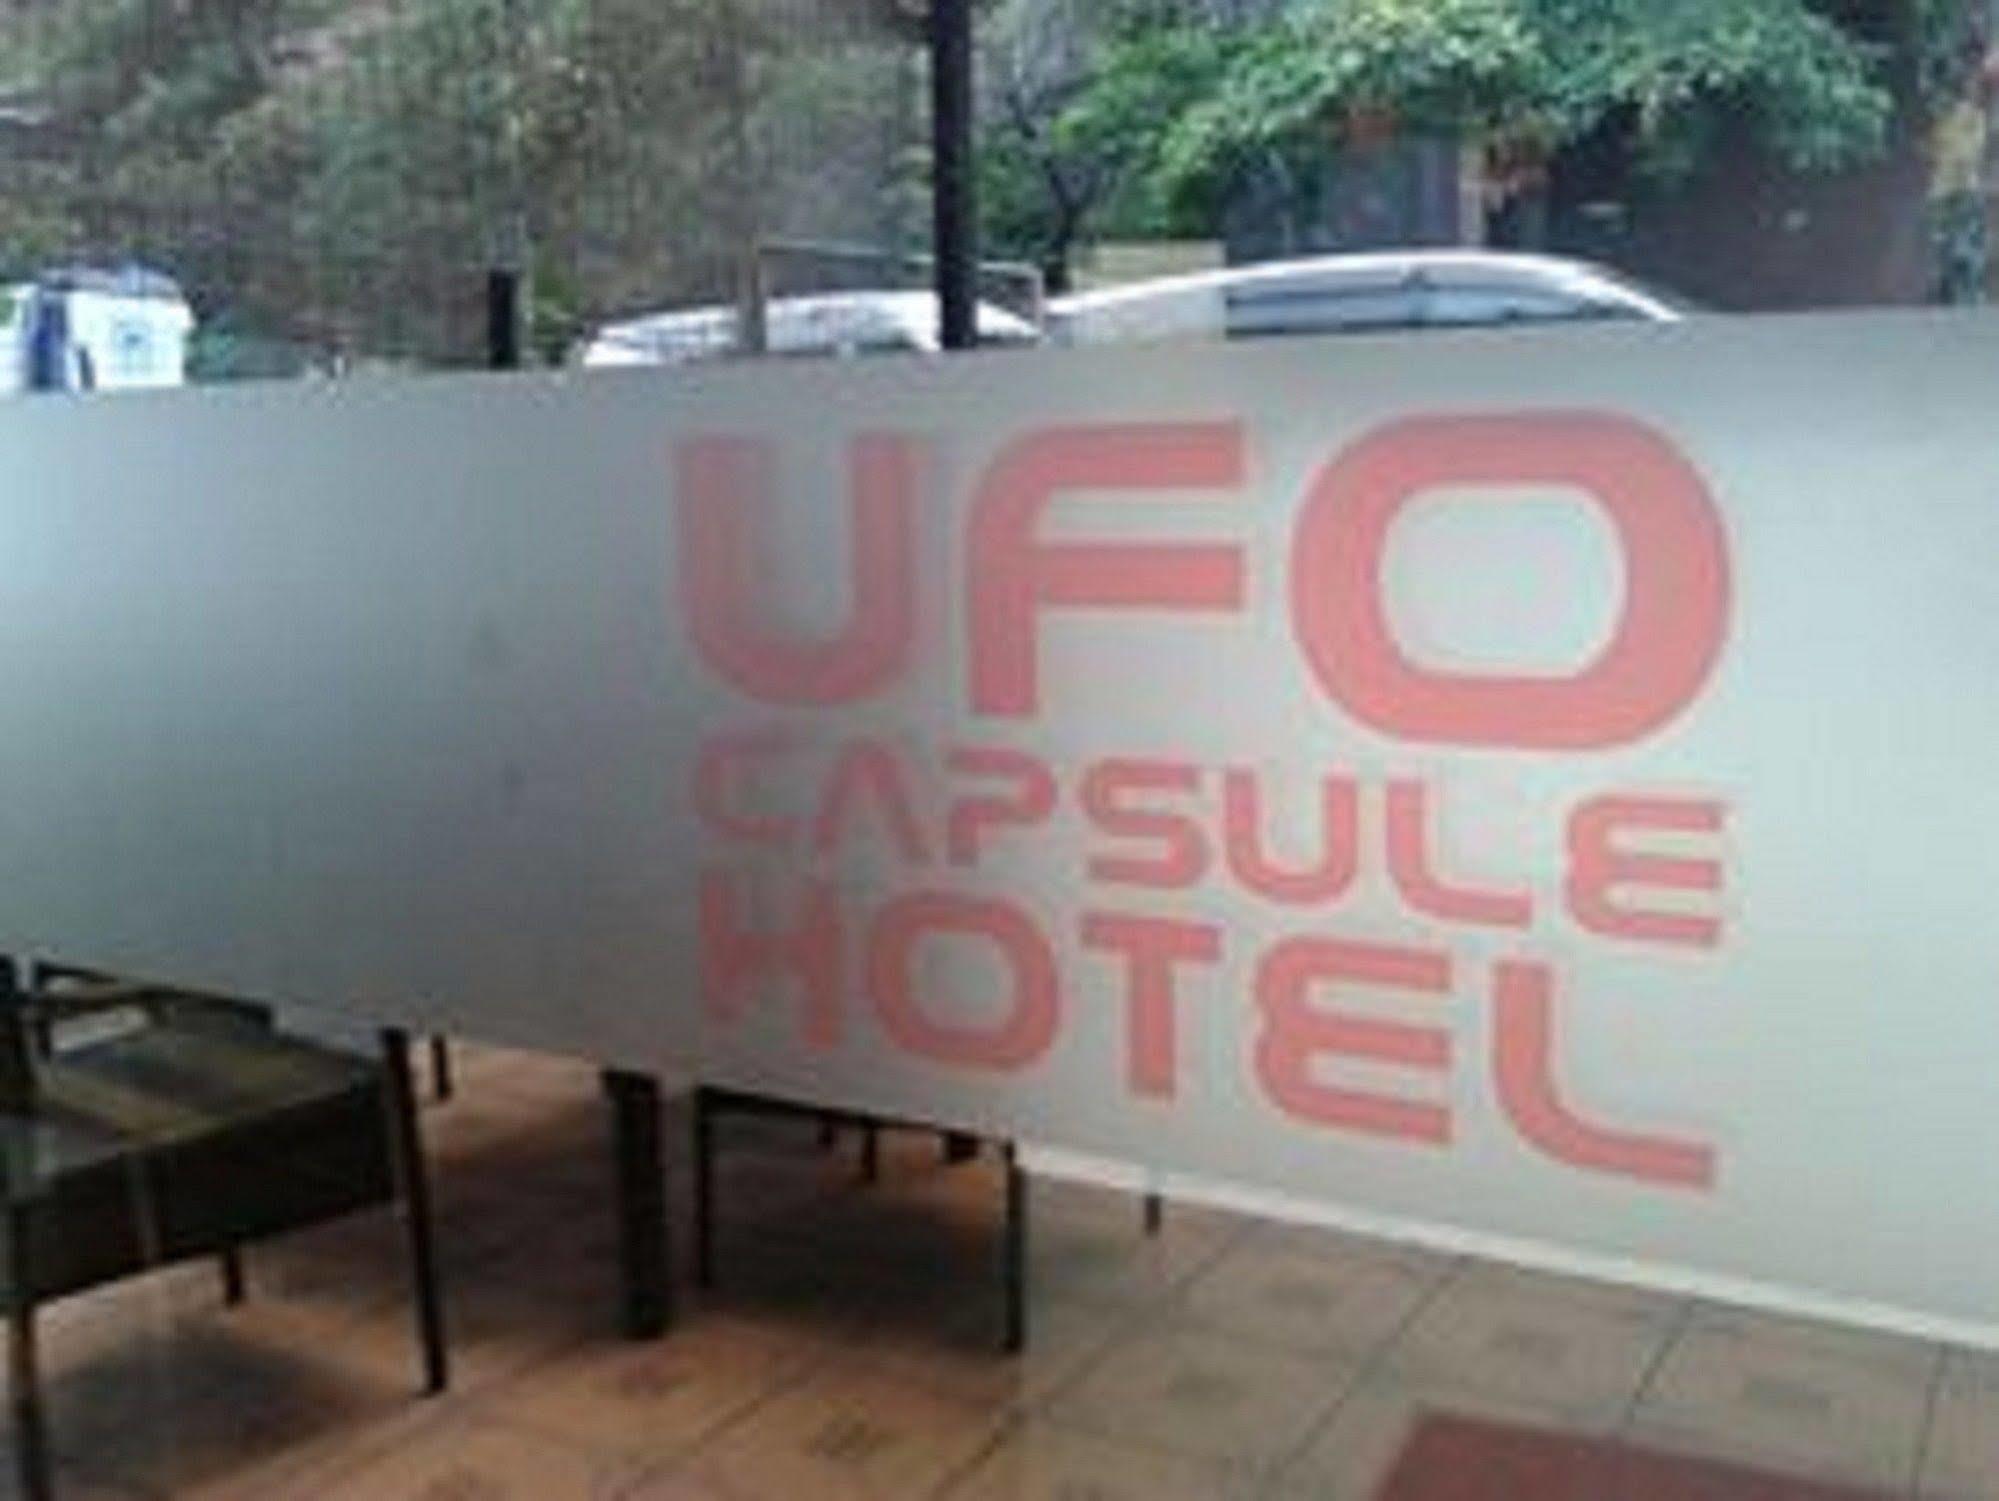 Ufo Capsule Hotel Kuala Lumpur Esterno foto